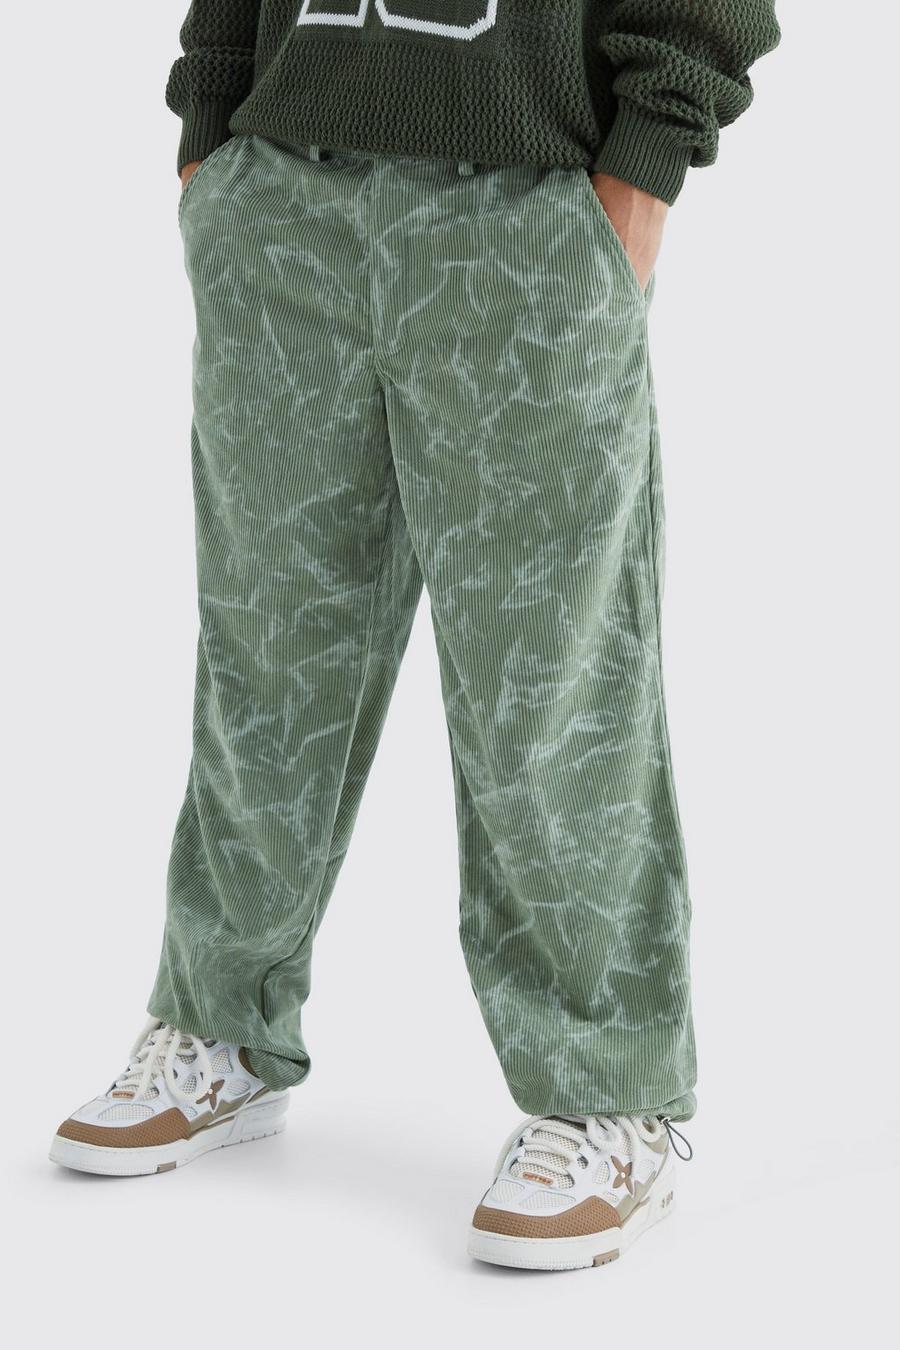 Pantalon côtelé tie dye, Green